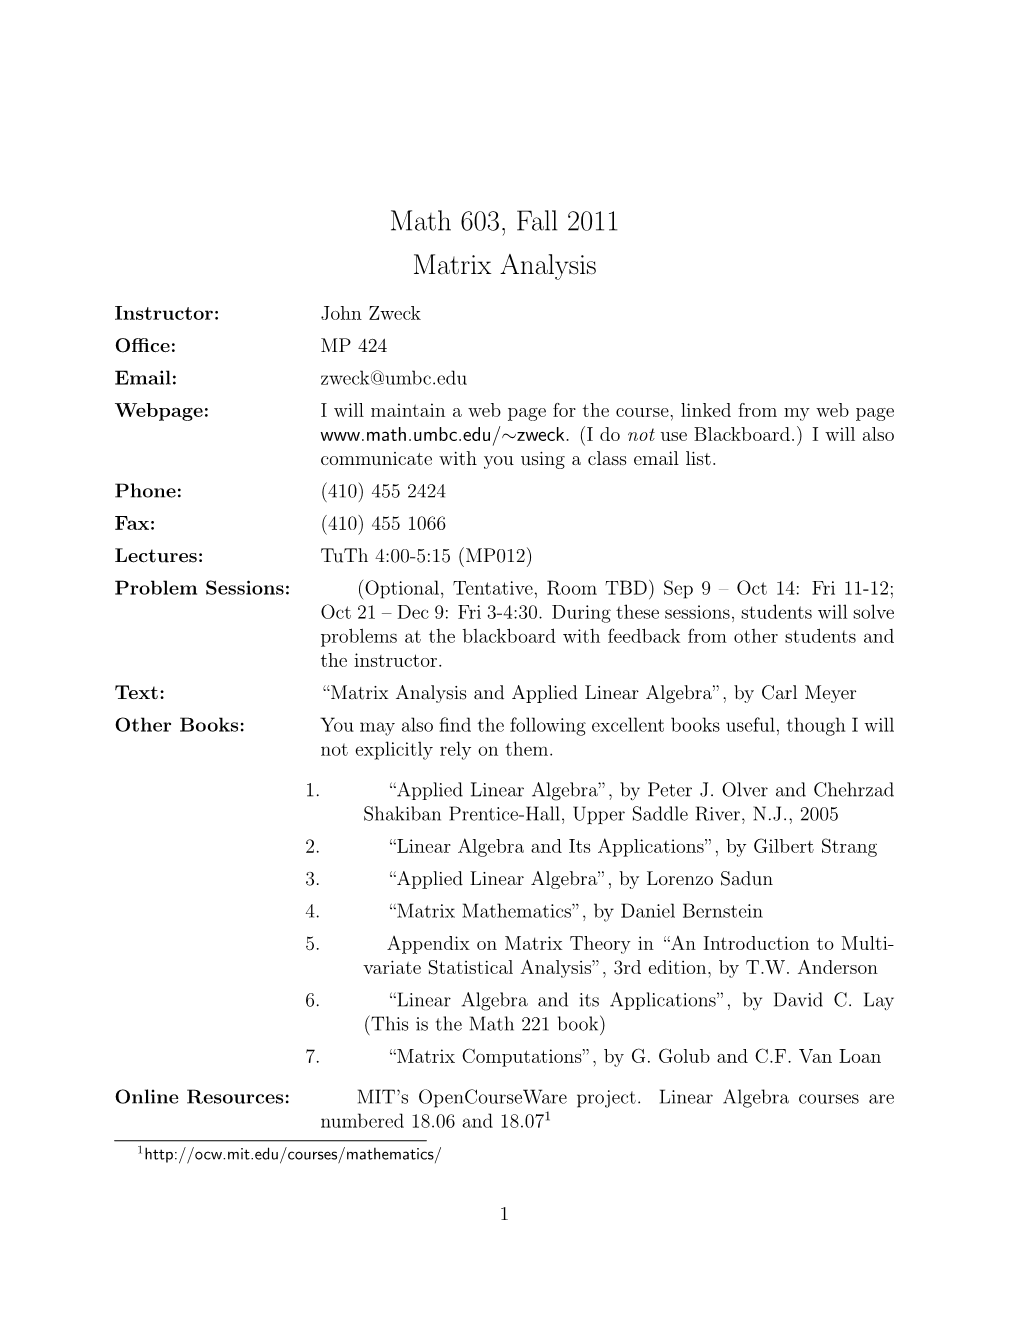 Math 603, Fall 2011 Matrix Analysis